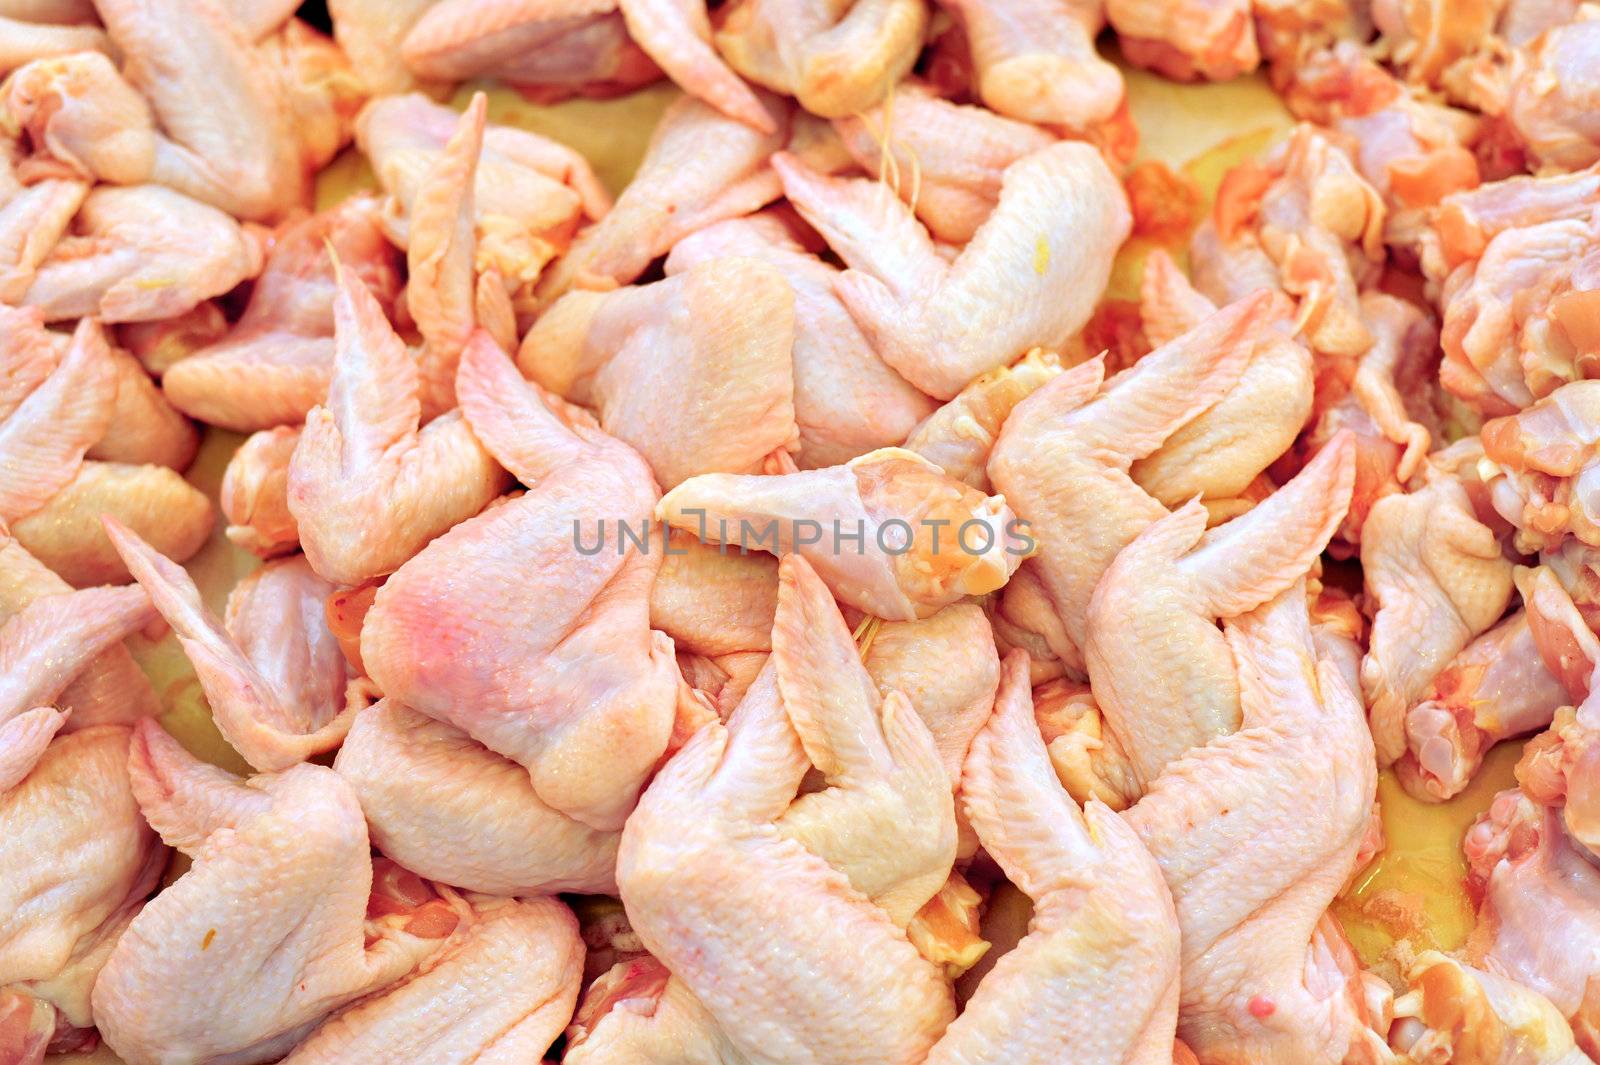 Chicken in market